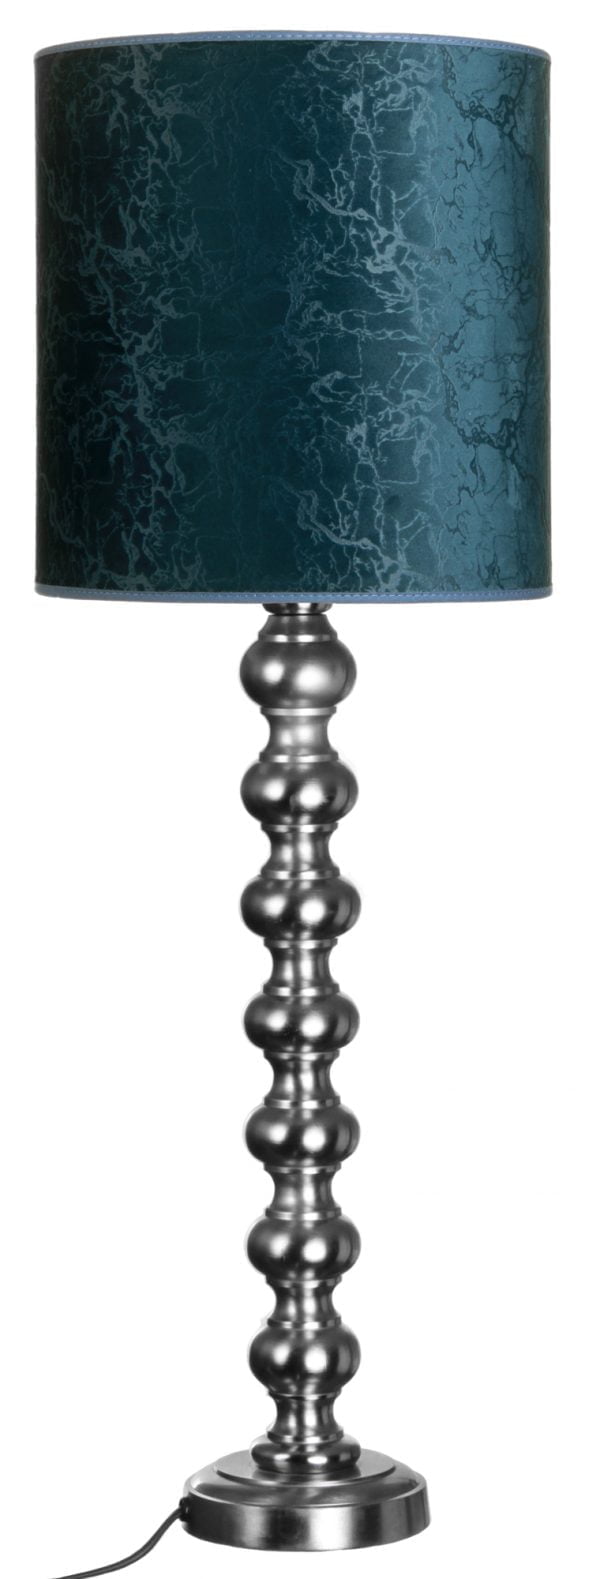 Metallinen lampunjalka jonka väri on teräs. Sylinterinmuotoinen varjostin on väriltään sininen.